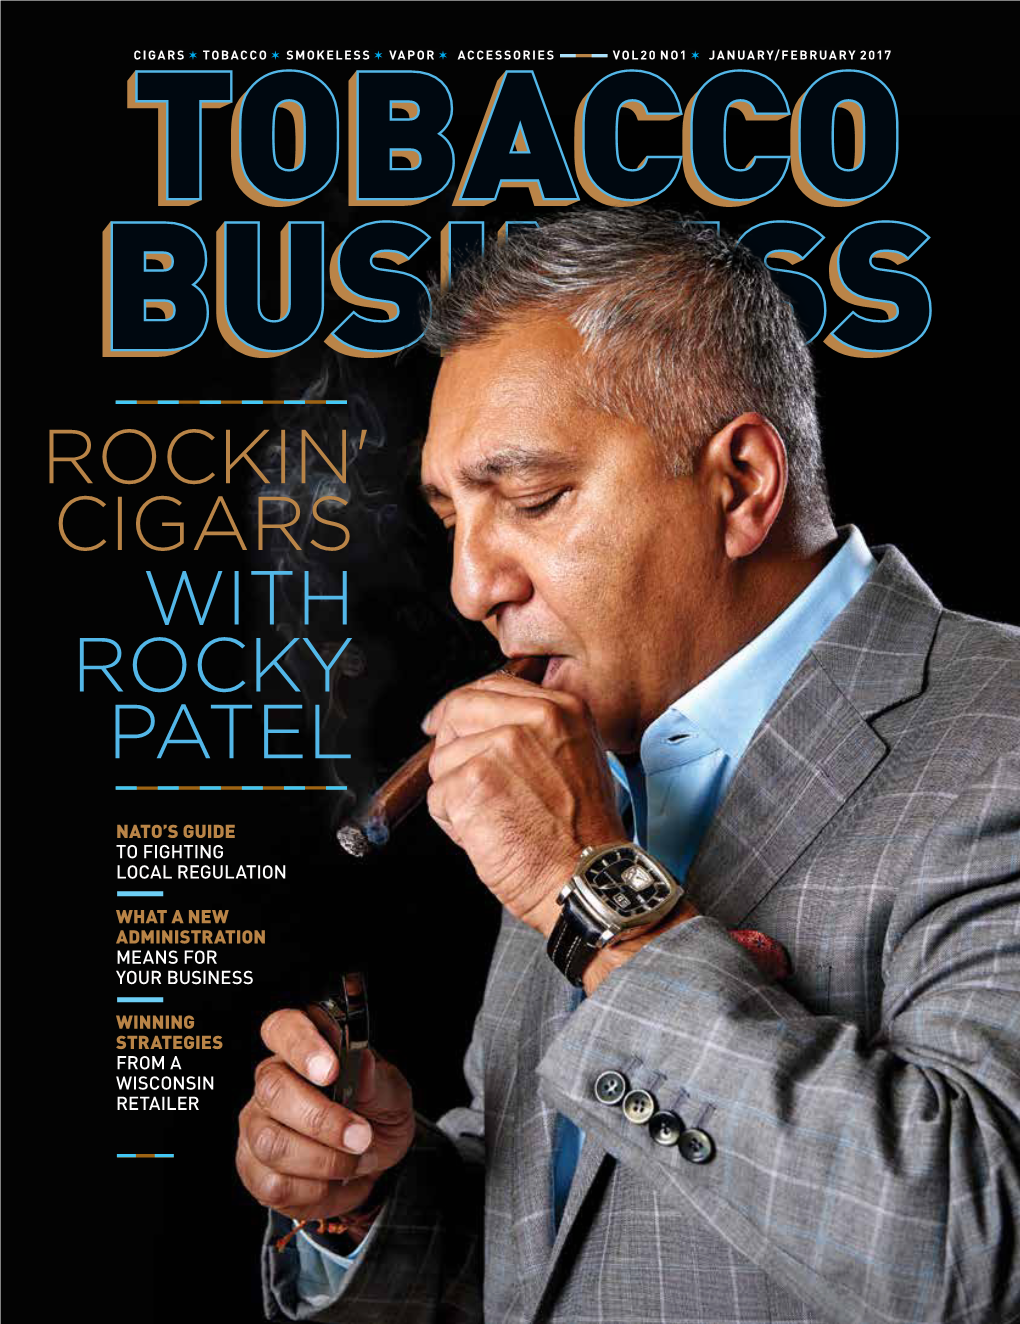 Rockin' Cigars with Rocky Patel